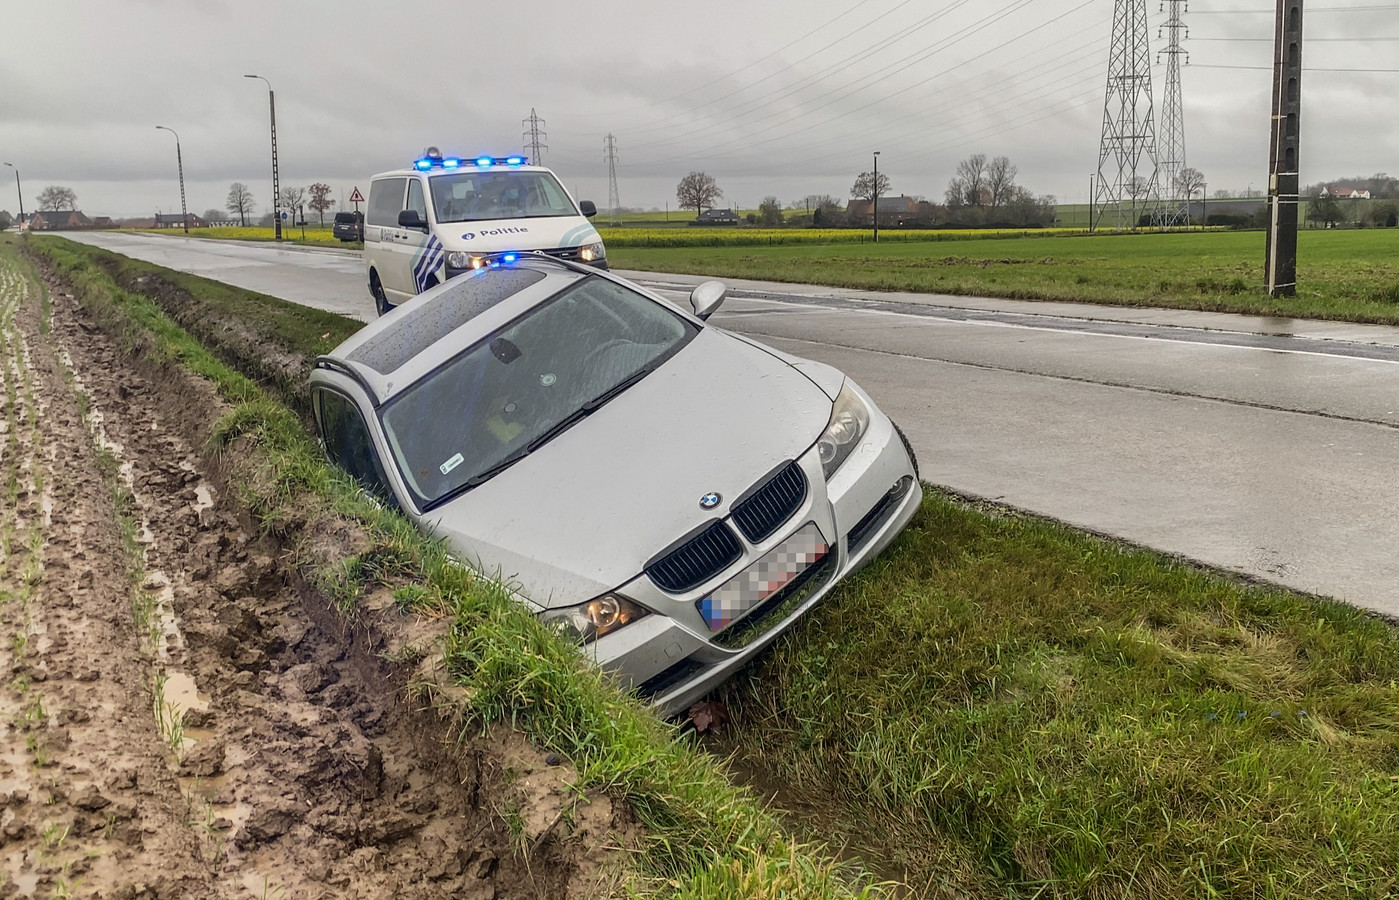 De auto reed vanuit de richting Wortegem-Petegem, toen de chauffeur de controle over het stuur verloor.